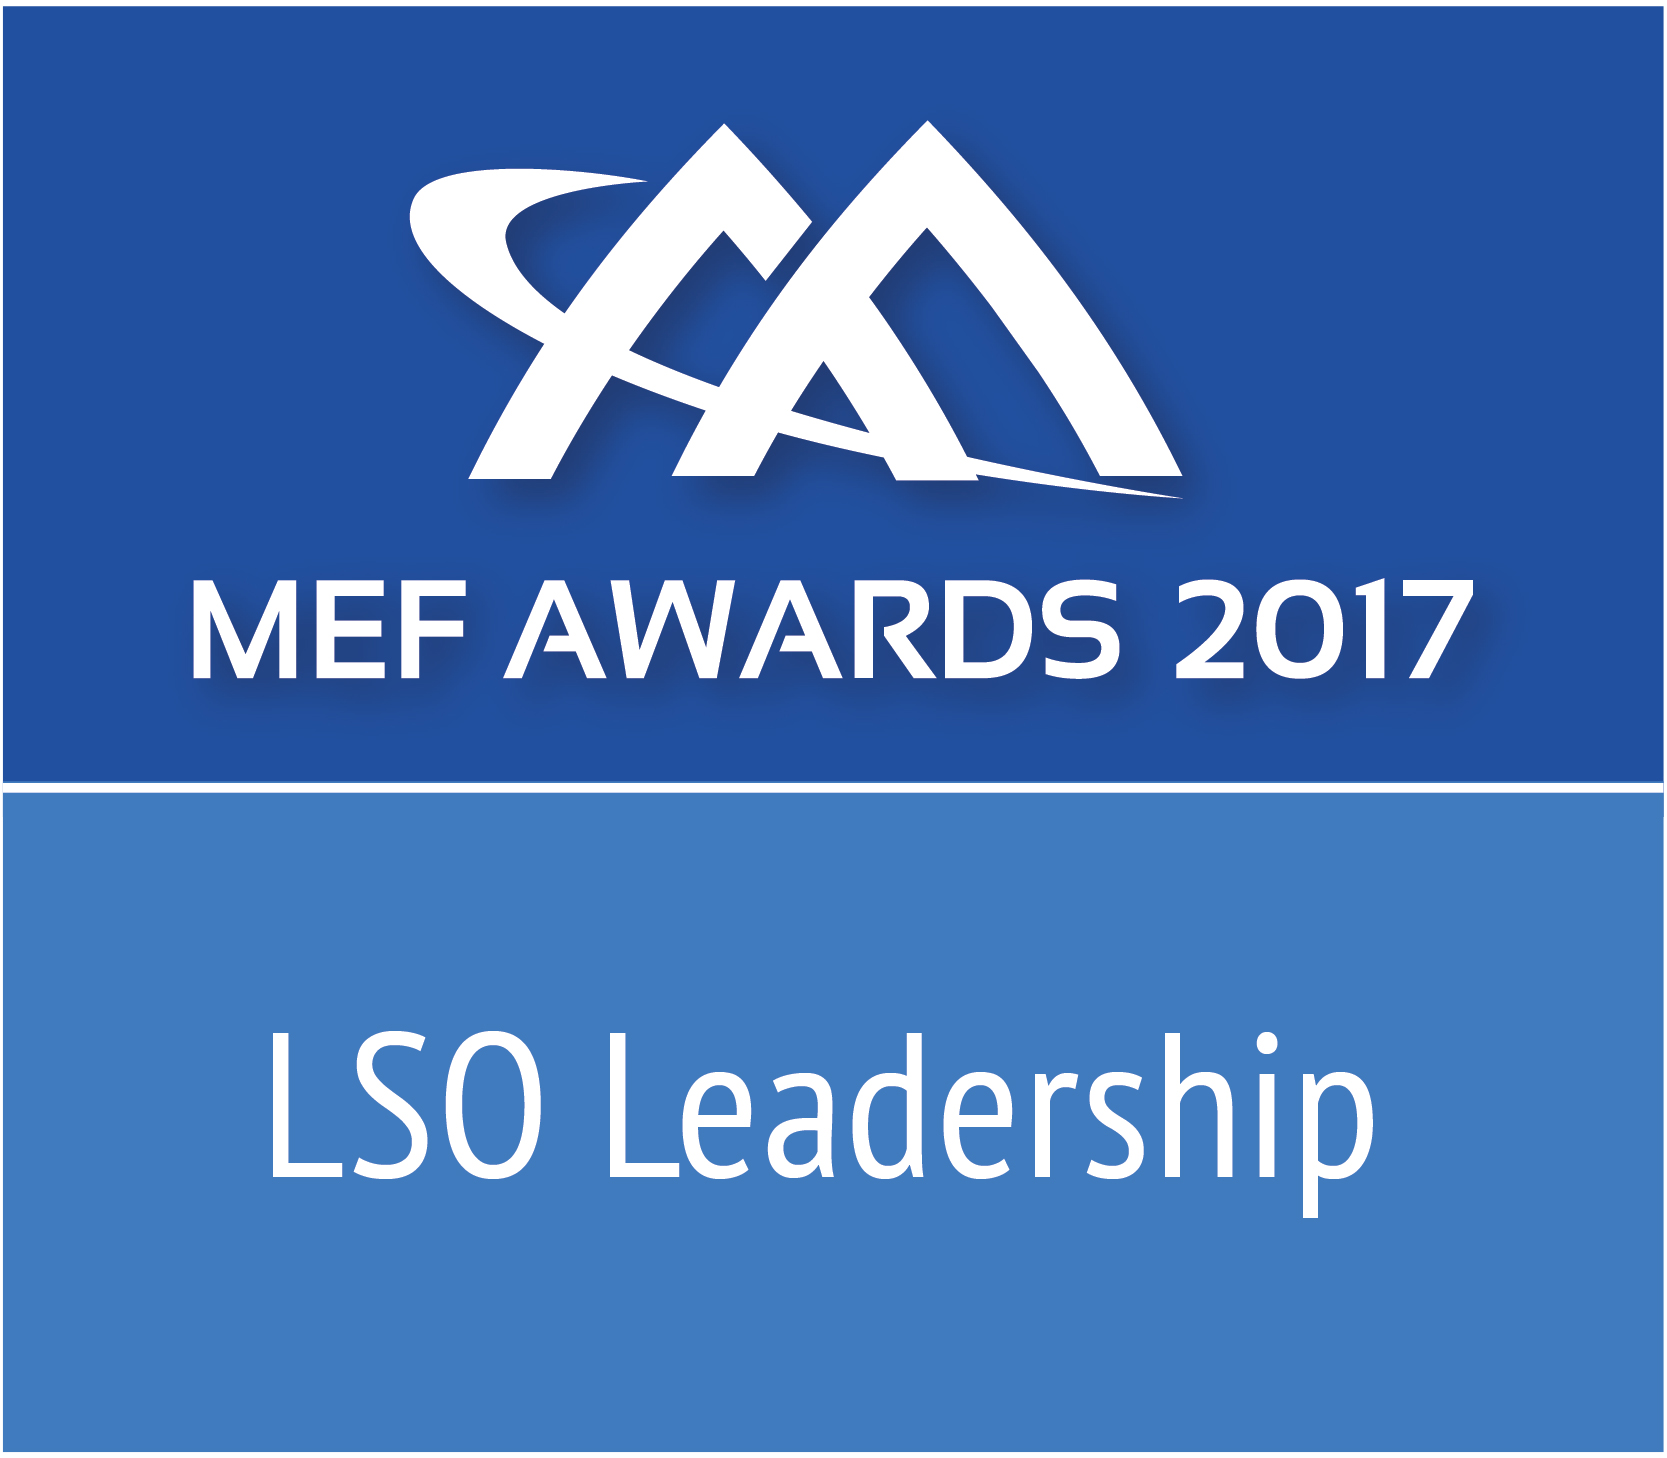 MEFAward2017_LSOLeadership_Worldwide_r2